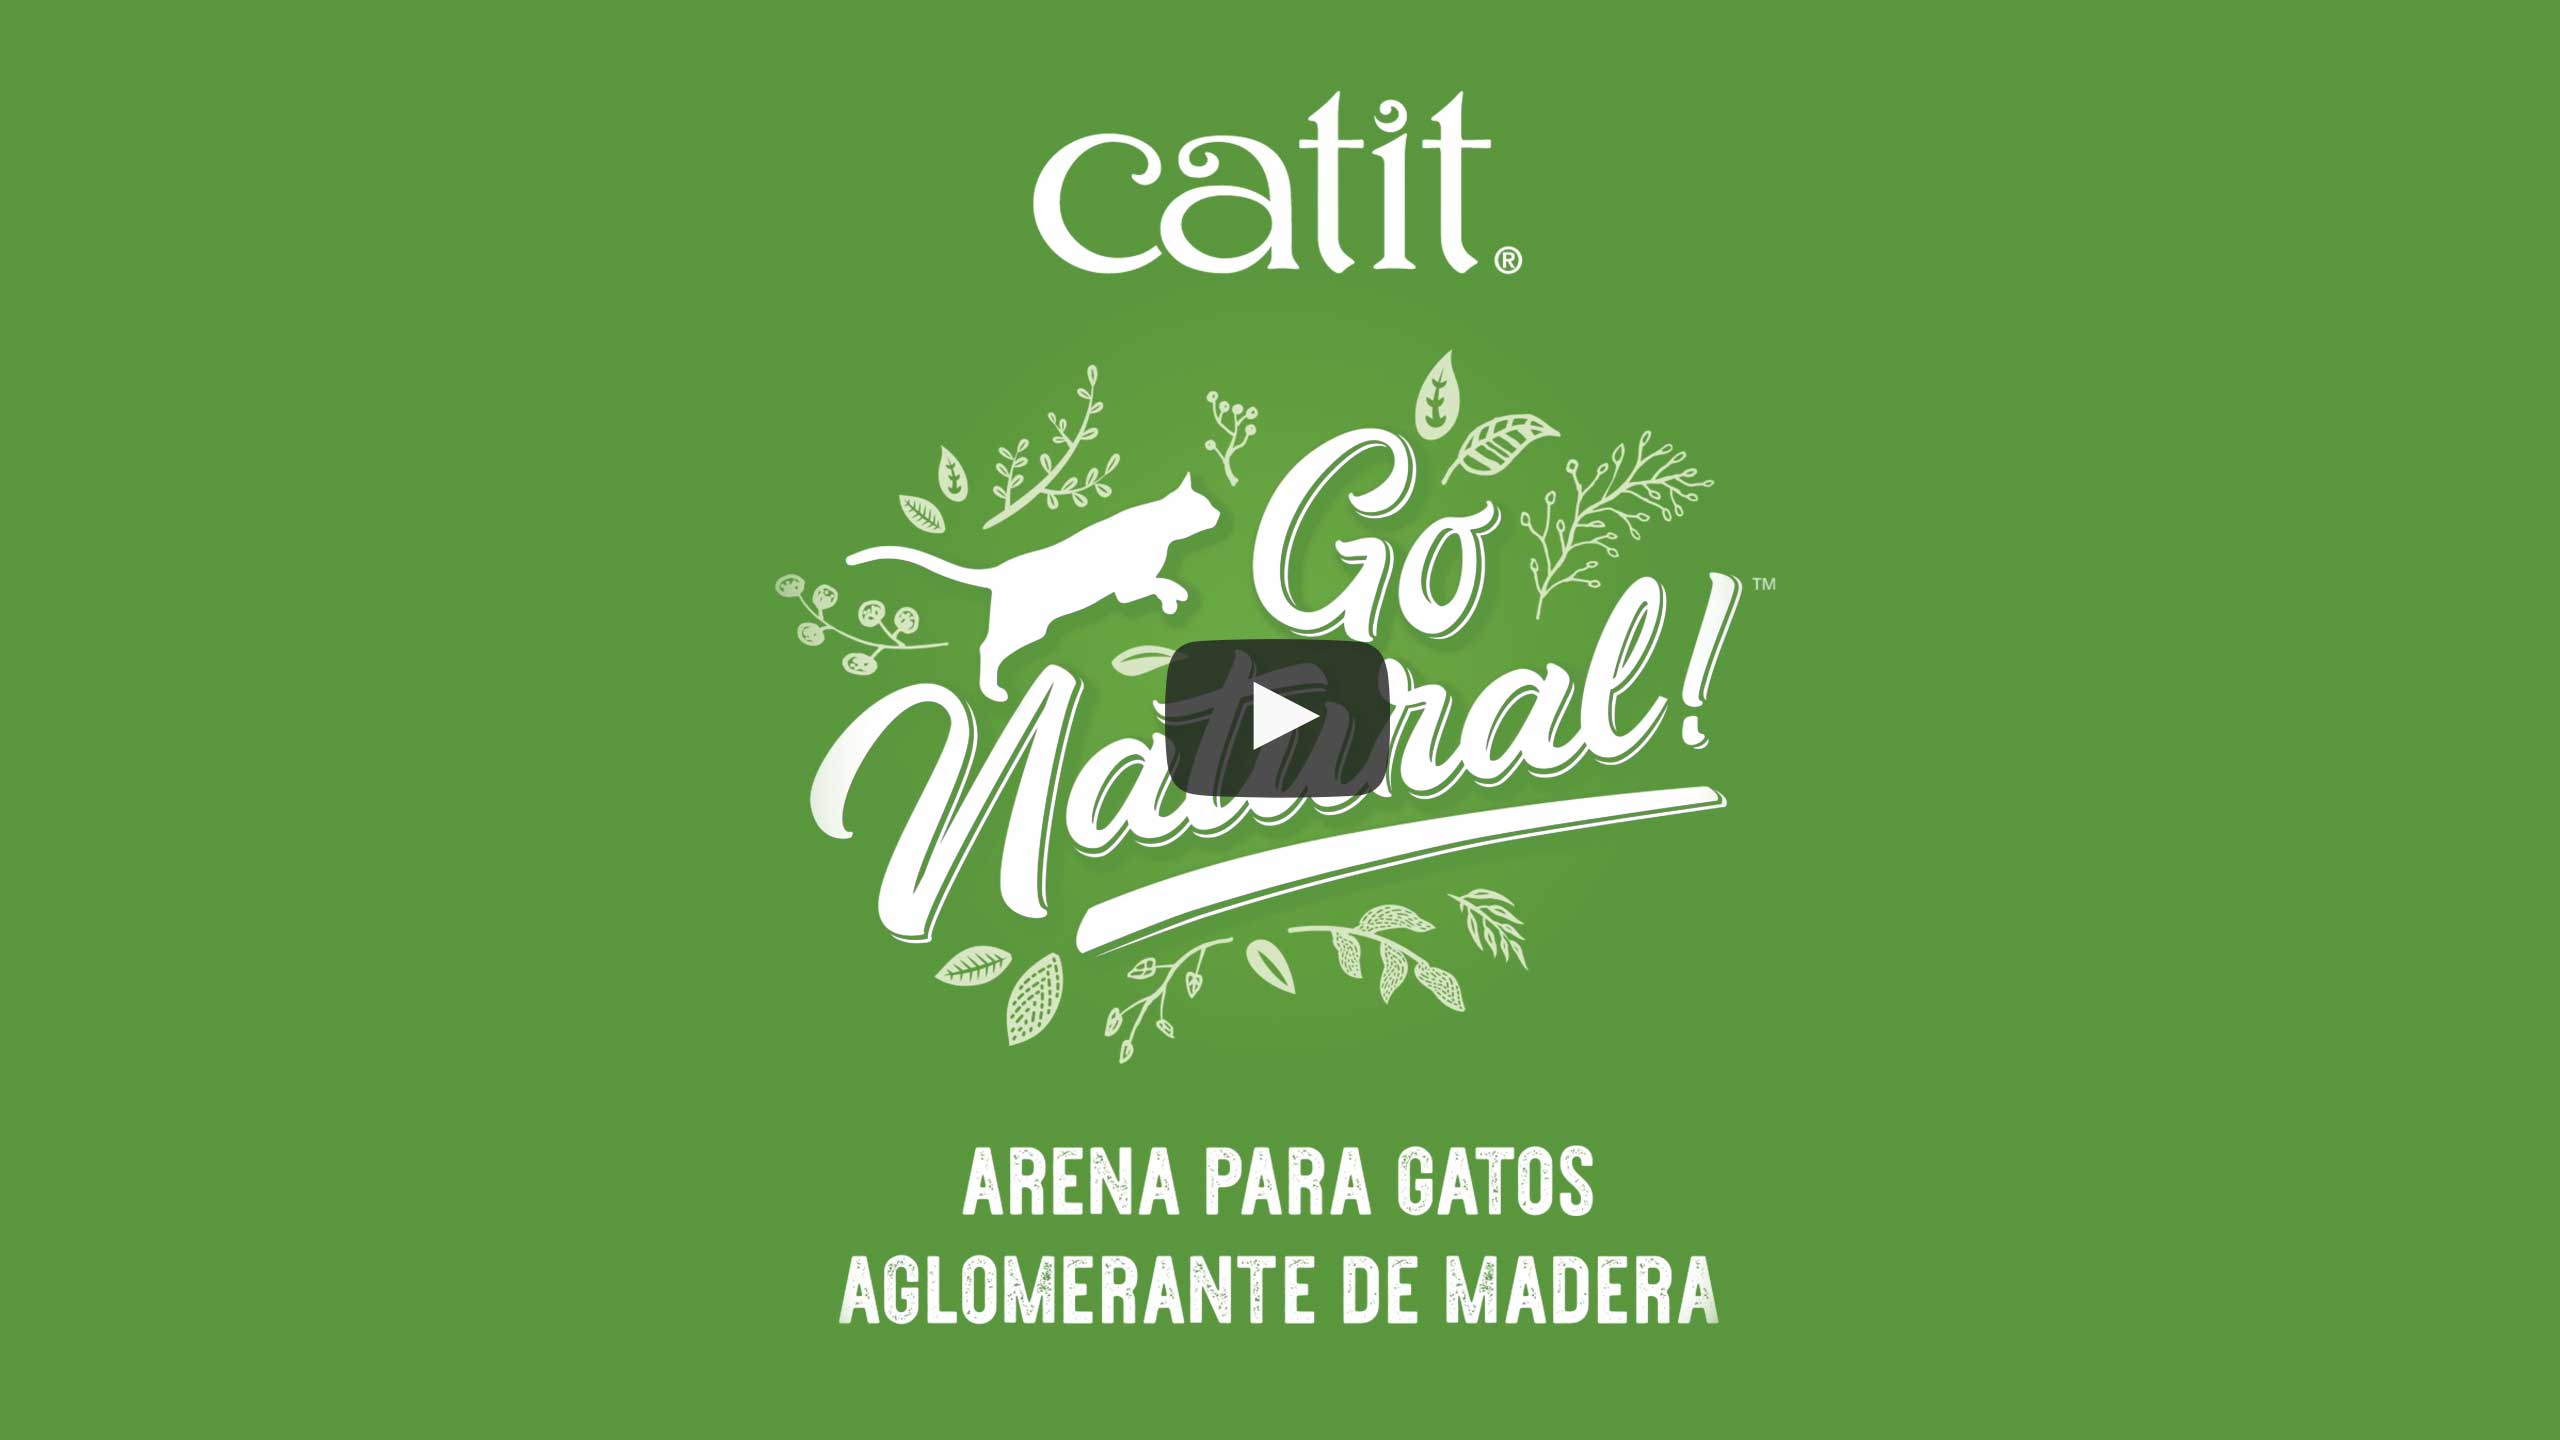 Arena Aglomerante para Gatos de Madera Catit Go Natural video